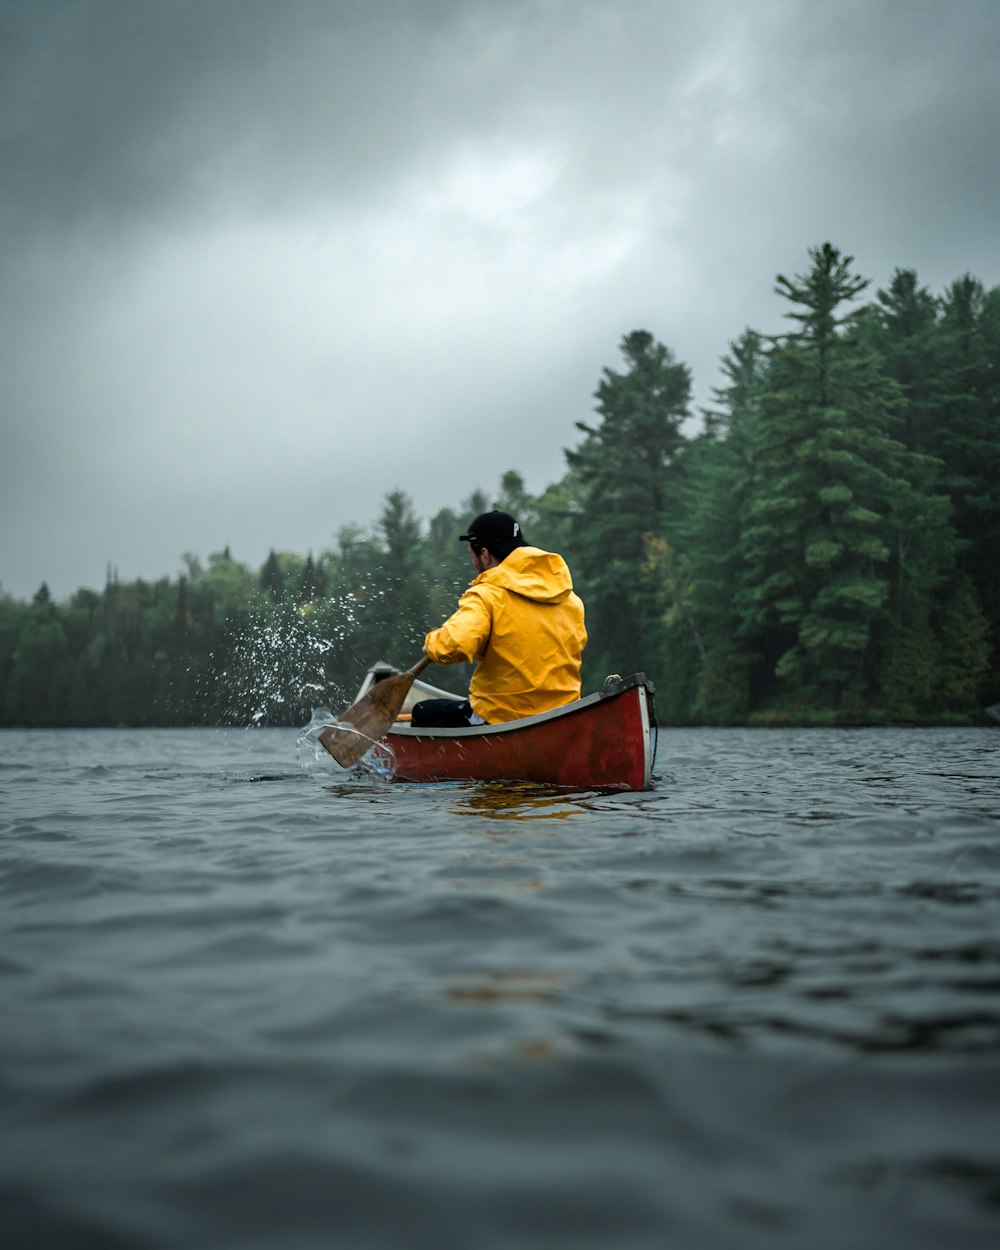 호수에서 빨간 카누를 타고 주황색 까마귀를 입은 남자